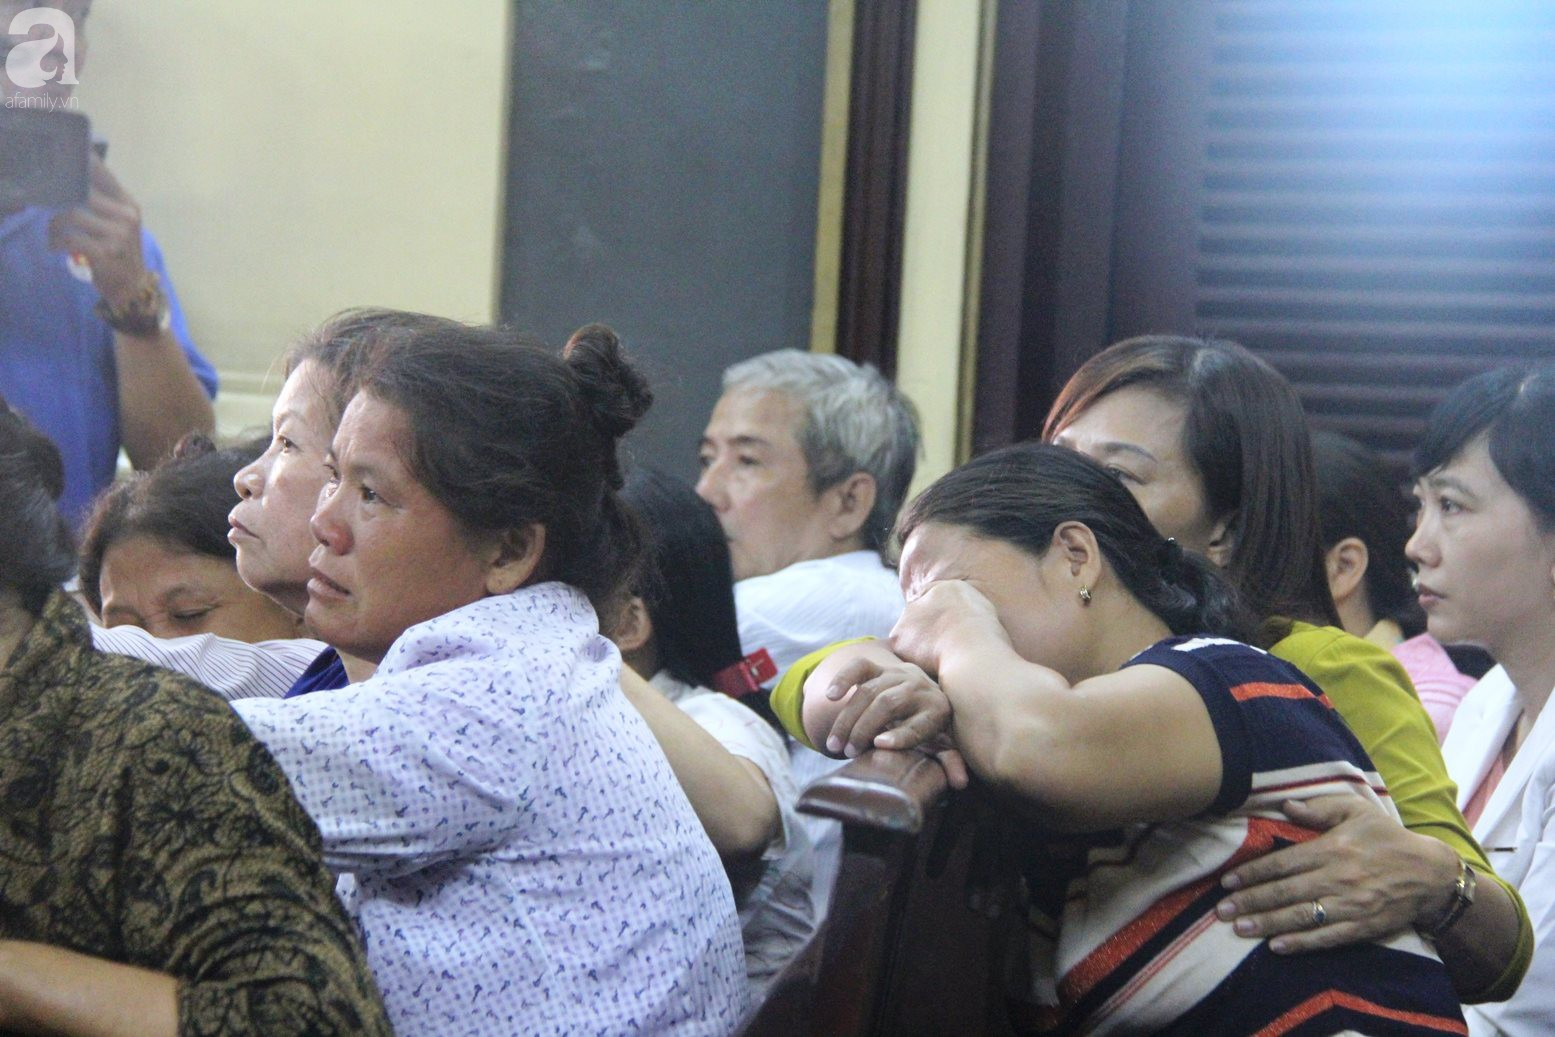 Tử hình kẻ giết chết 5 mạng người tại Bình Tân: Bị cáo xin lỗi, muốn hiến tạng cho y học, người nhà nạn nhân gào khóc thảm thiết - Ảnh 9.